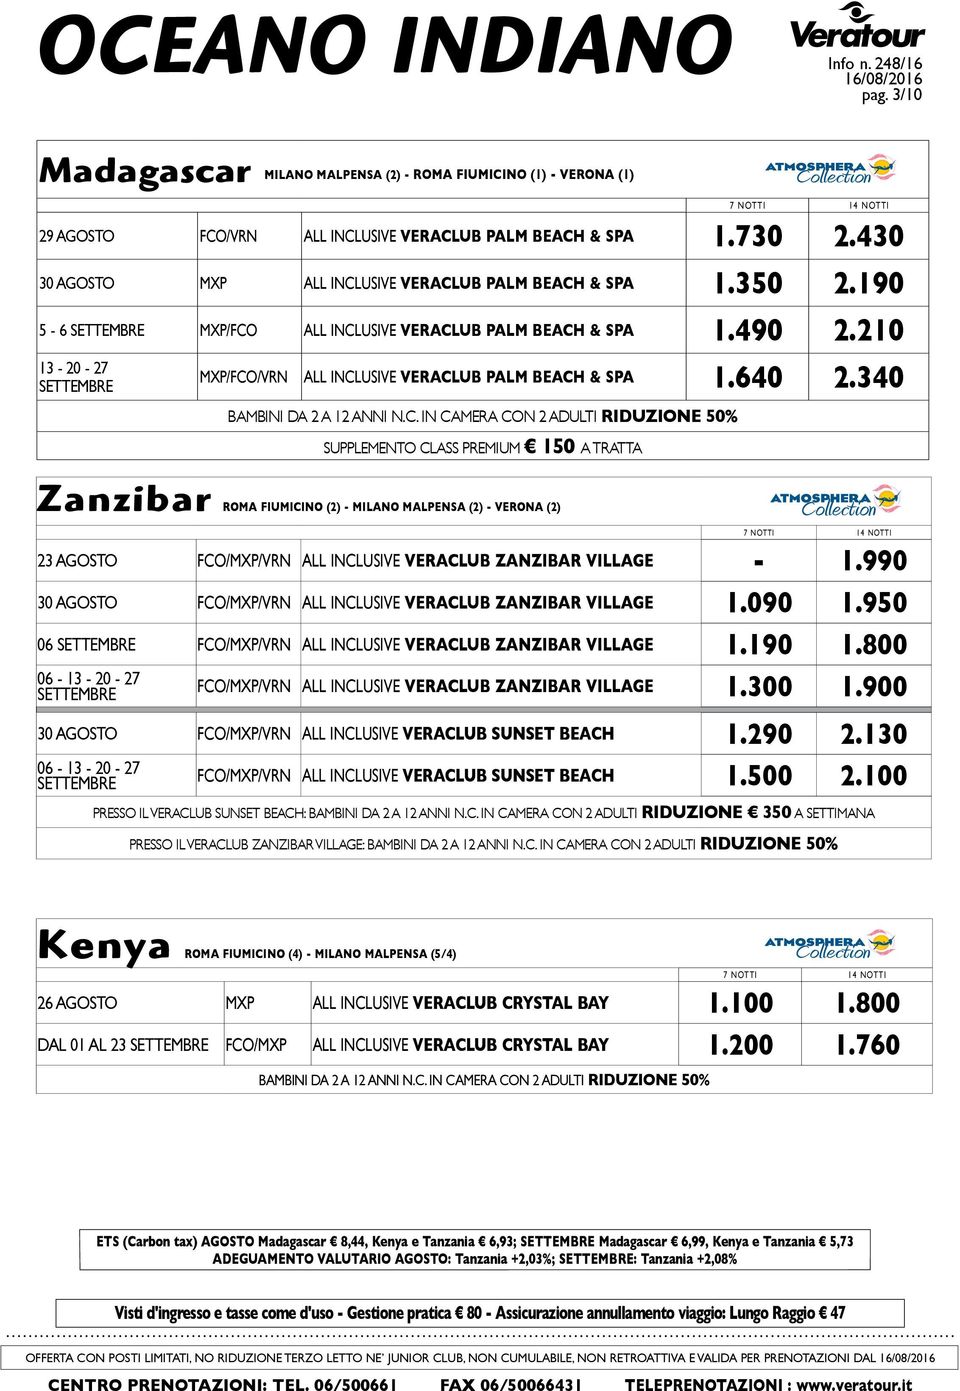 640 2.340 13-20 - 27 SETTEMBRE SUPPLEMENTO CLASS PREMIUM 150 A TRATTA Zanzibar ROMA FIUMICINO (2) - MILANO MALPENSA (2) - VERONA (2) 23 AGOSTO FCO/MXP/VRN ALL INCLUSIVE VERACLUB ZANZIBAR VILLAGE - 1.